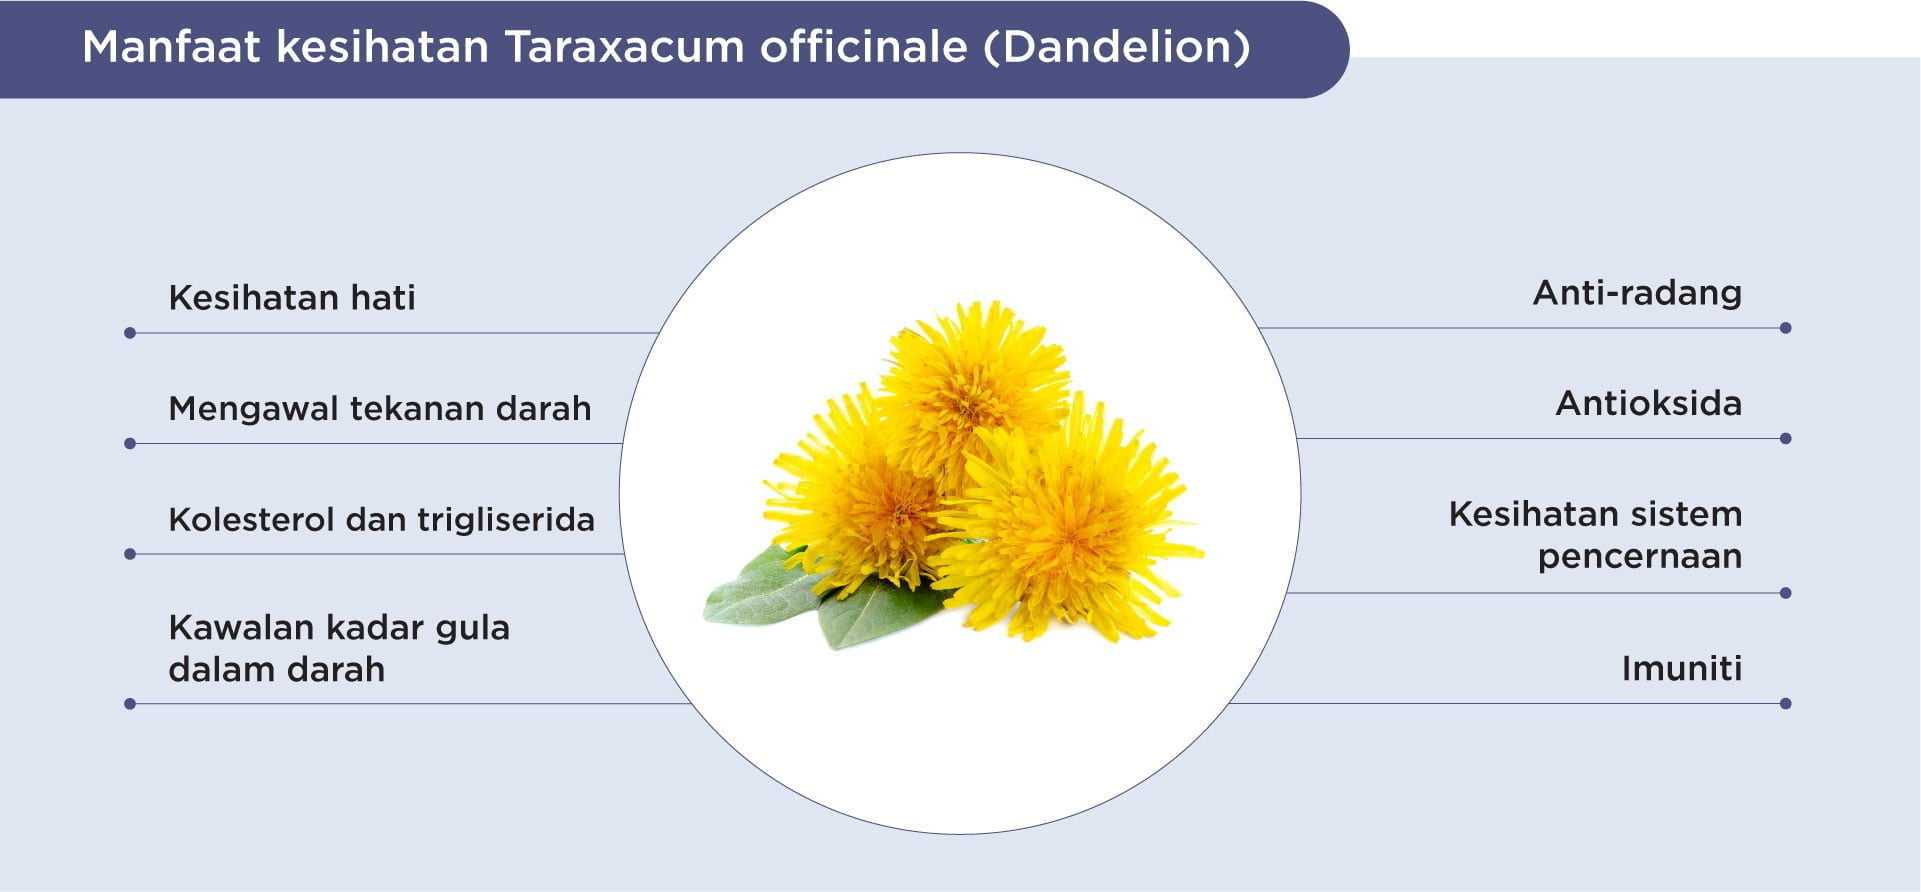 Benefits of dandelion